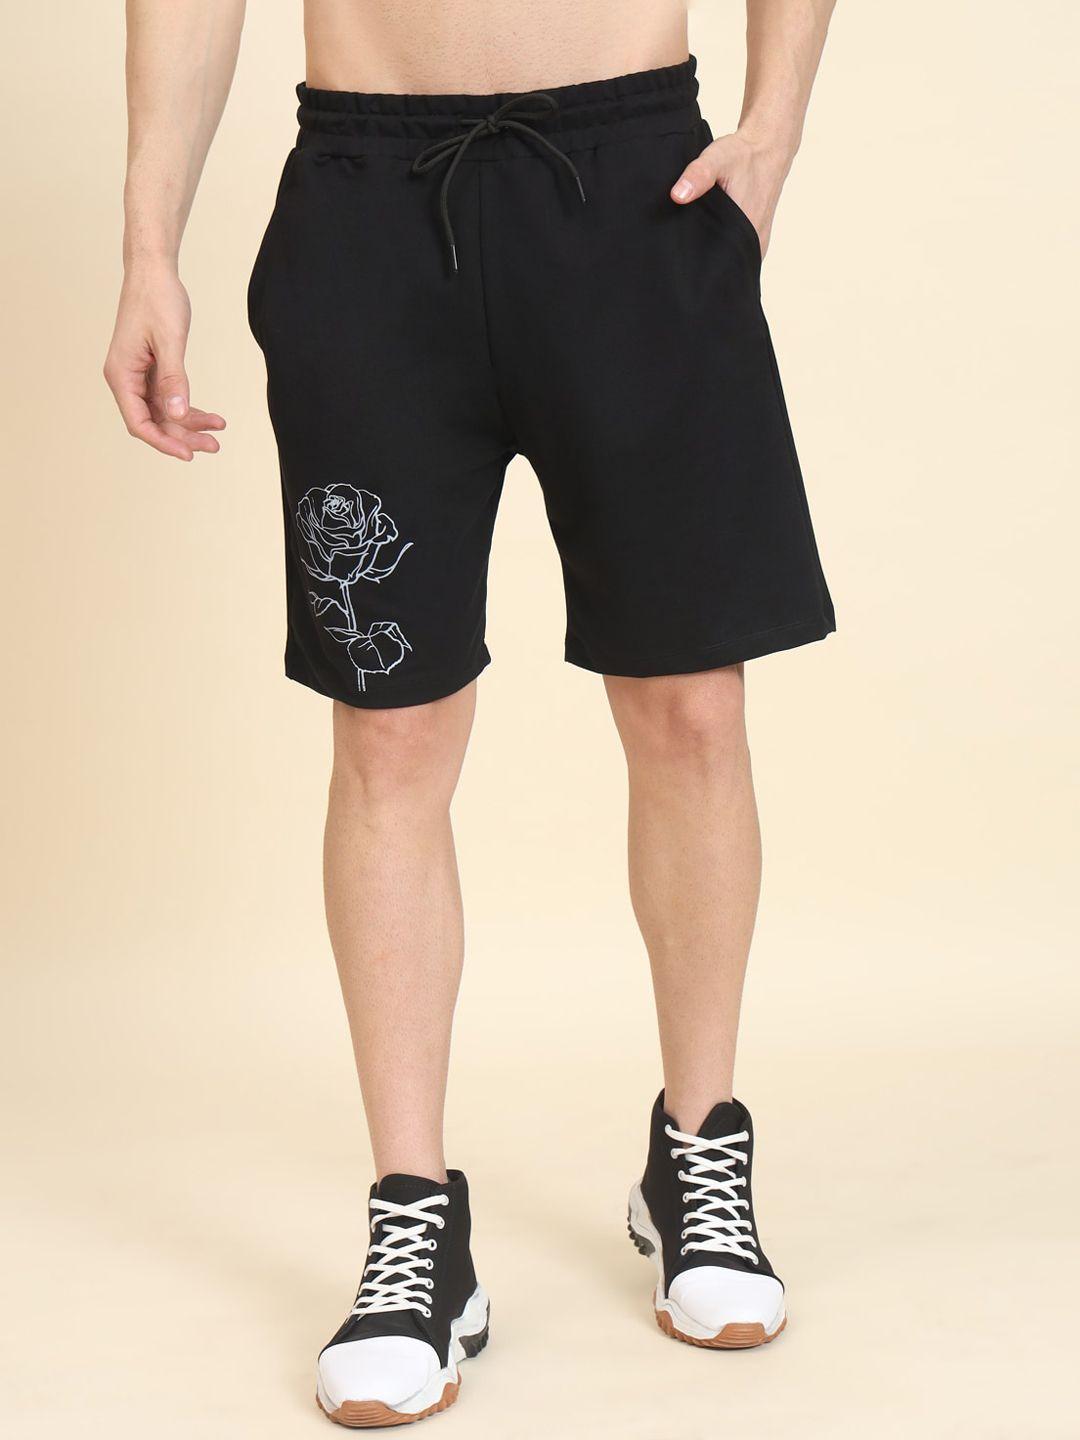 muwin-men-printed-loose-fit-shorts